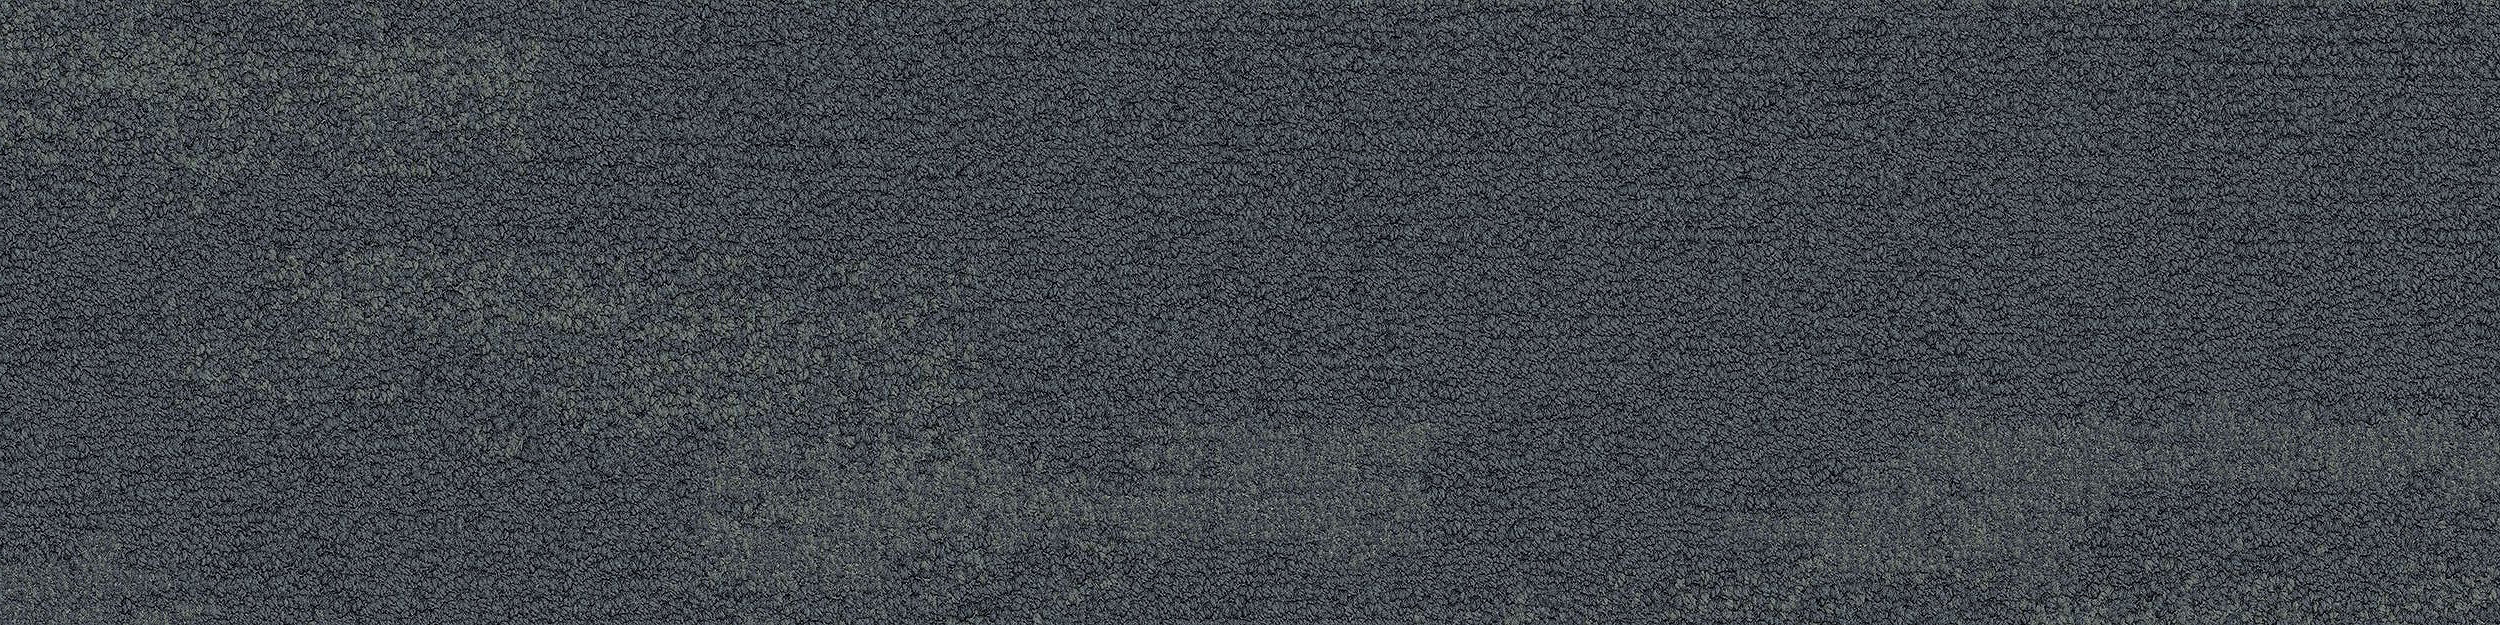 NF401 Carpet Tile In Shale número de imagen 10